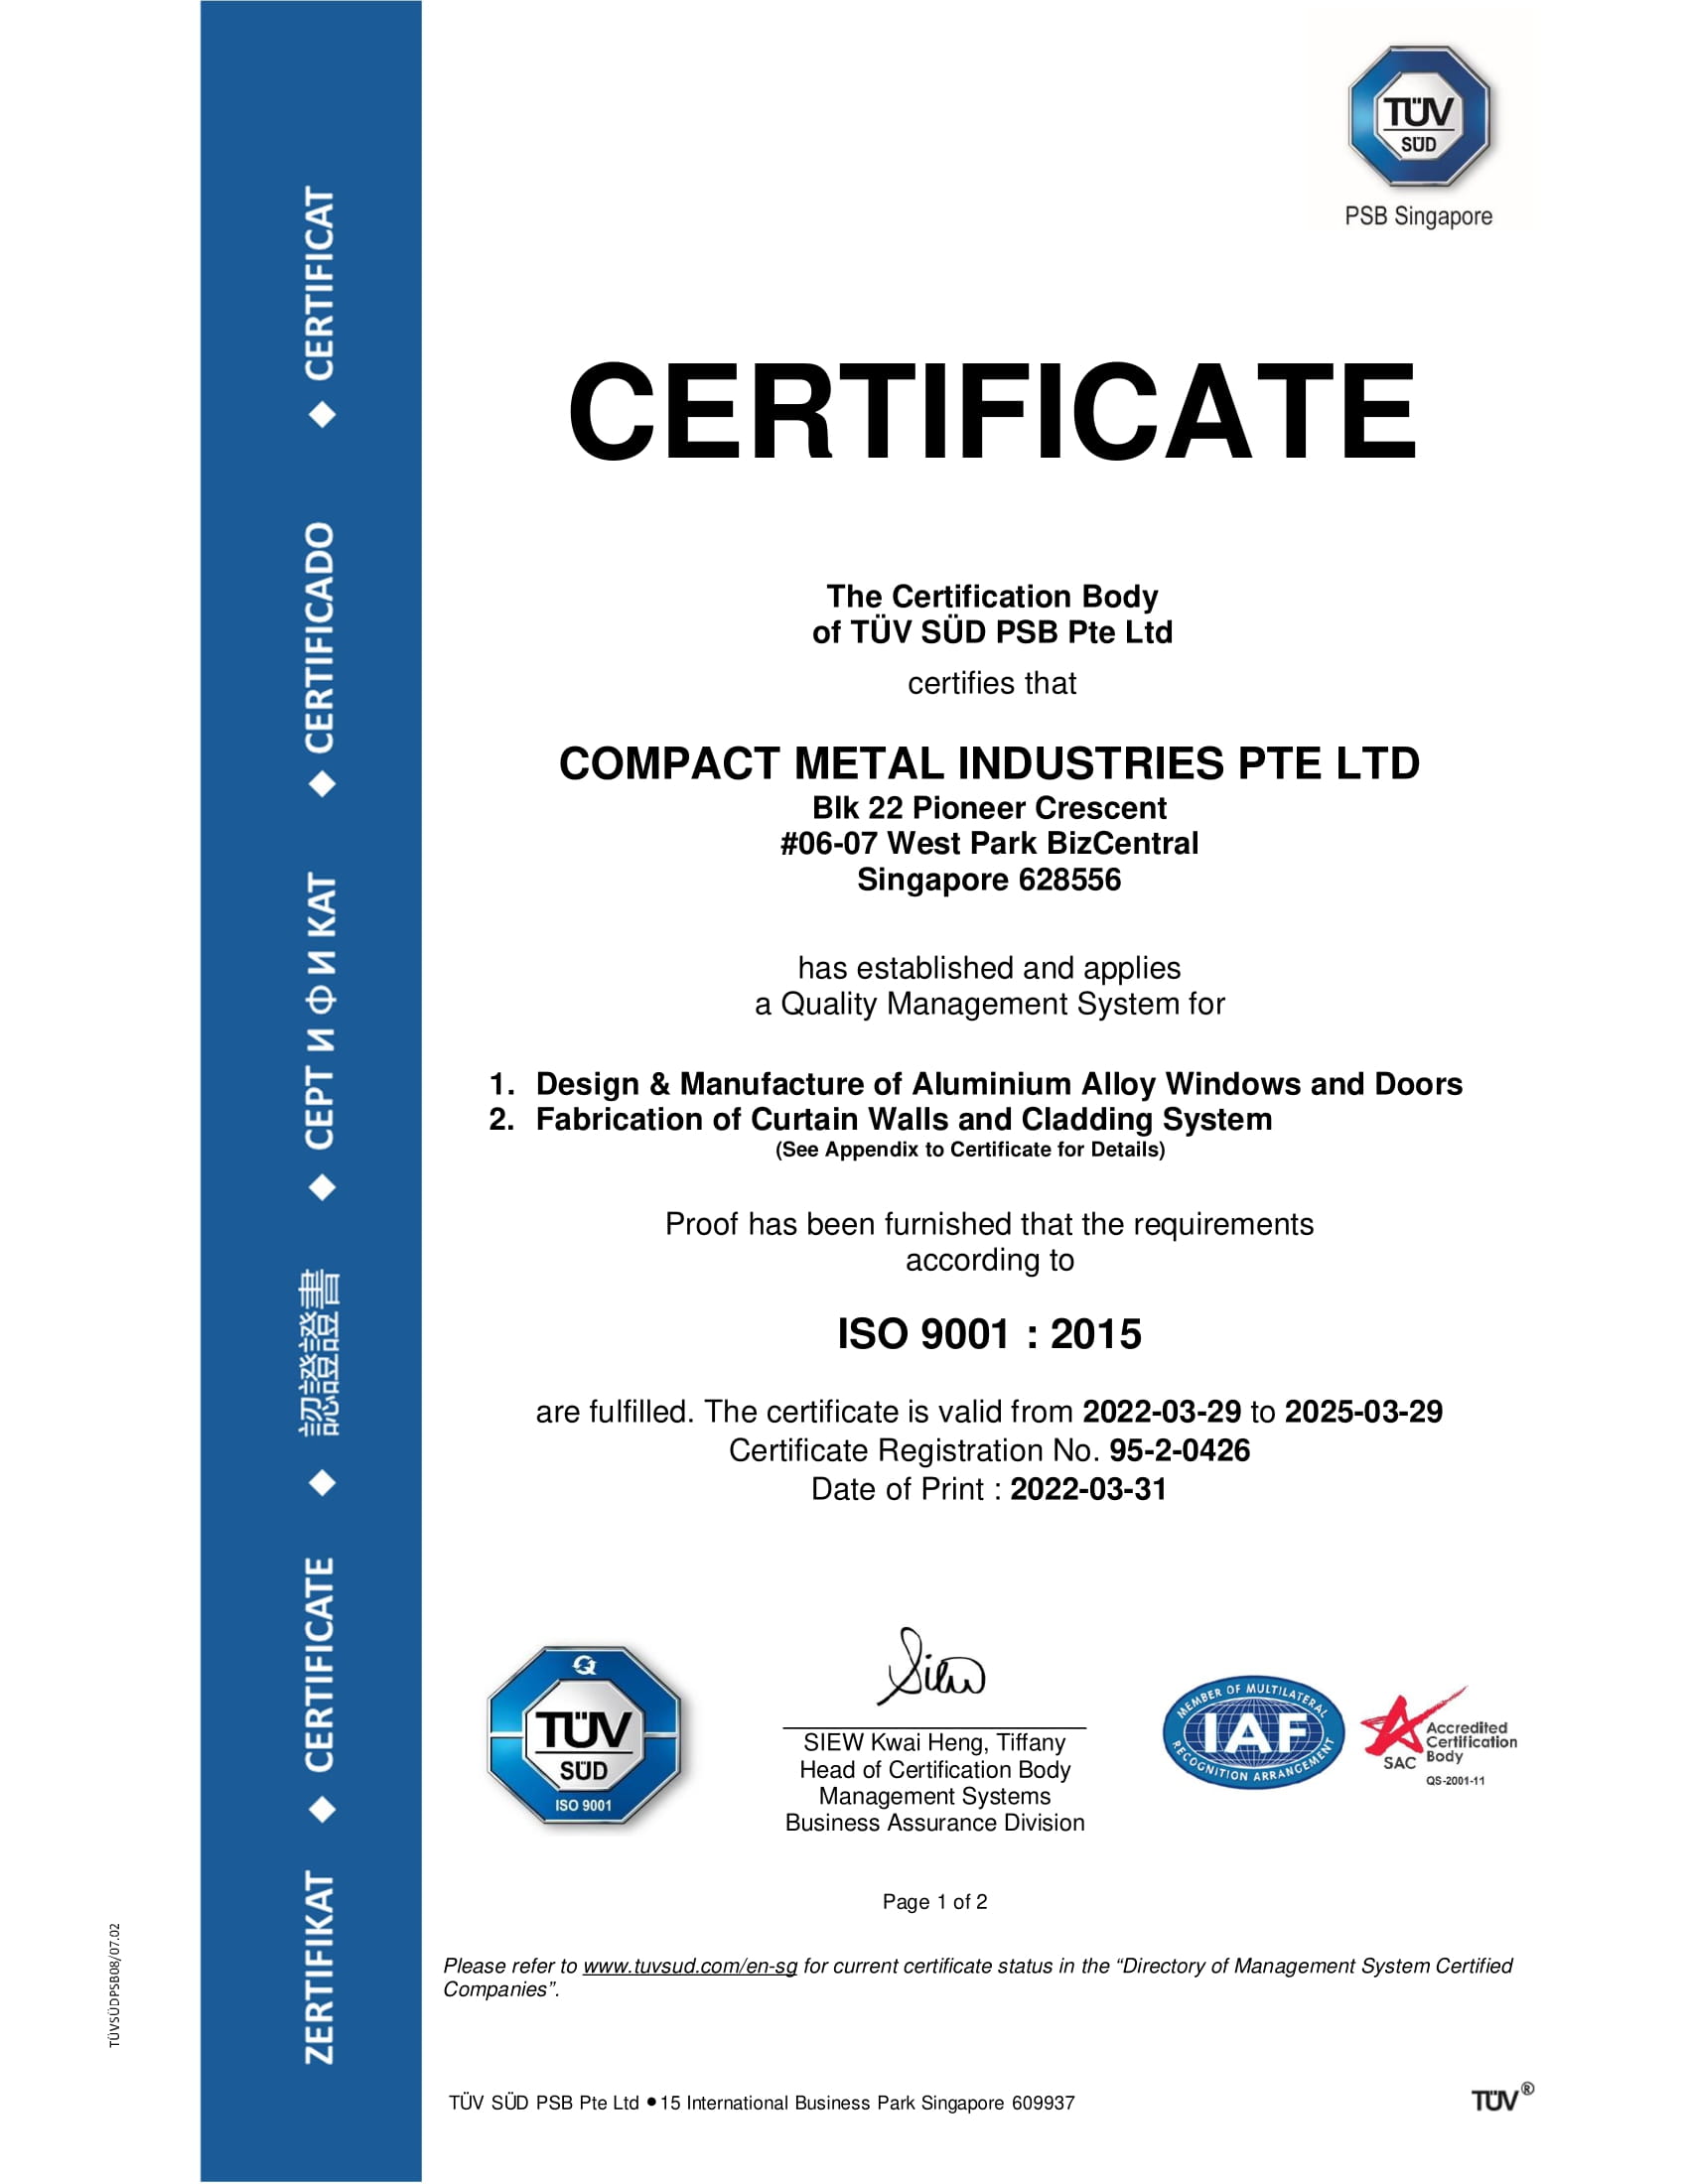 Iso 9001 Certificate Valid Till 29.3.2025 1